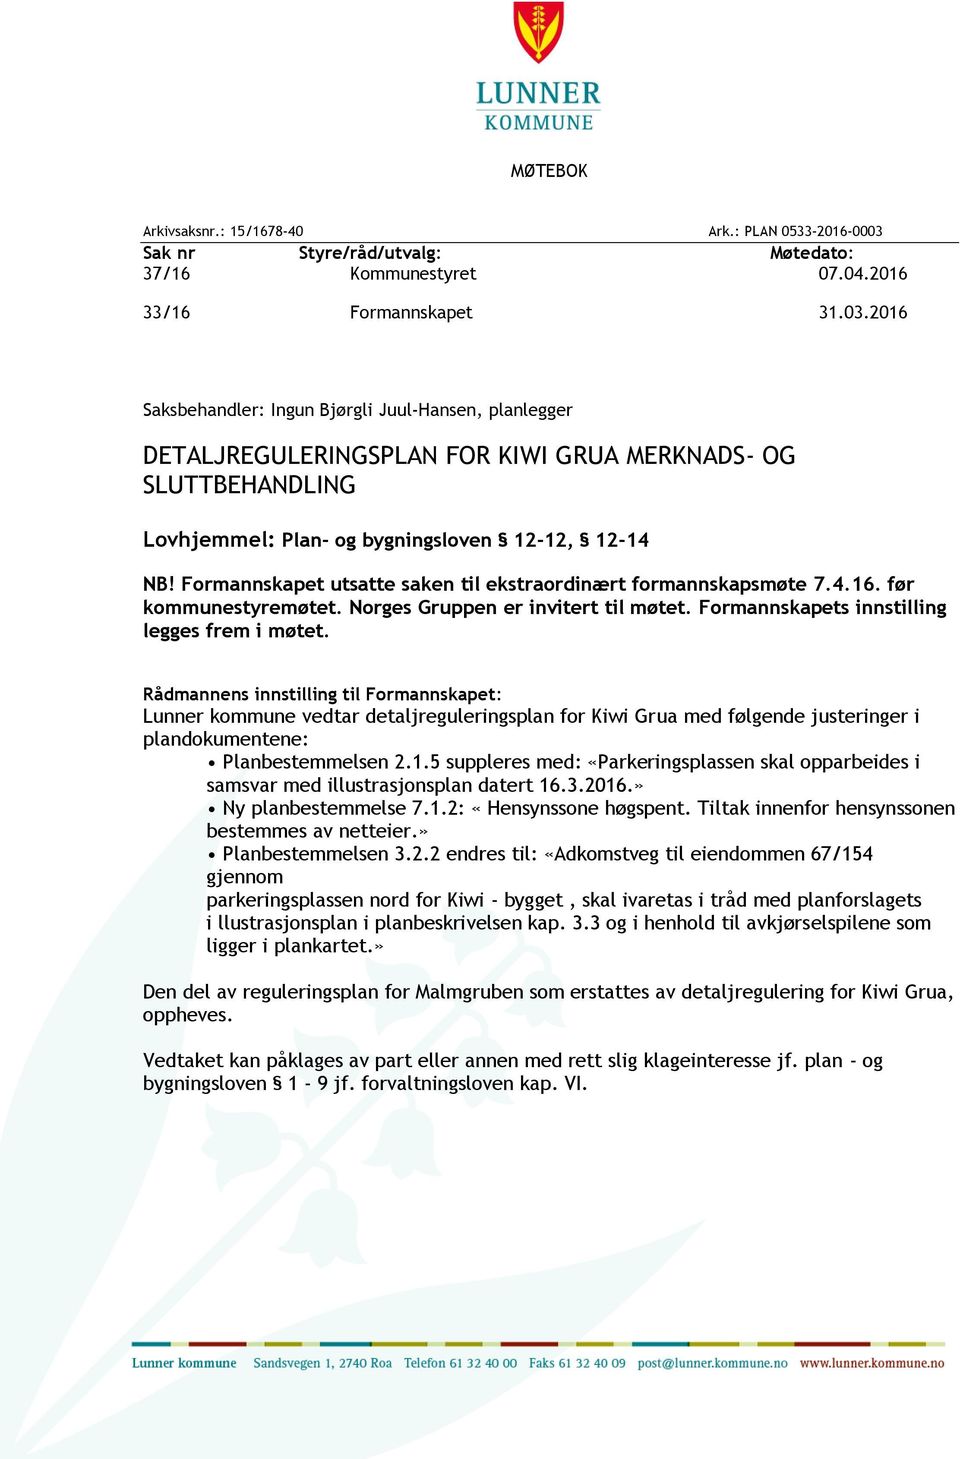 2016 Saksbehandler: Ingun Bjørgli Juul-Hansen, planlegger DETALJREGULERINGSPLAN FOR KIWI GRUA MERKNADS- OG SLUTTBEHANDLING Lovhjemmel: Plan- og bygningsloven 12-12, 12-14 NB!